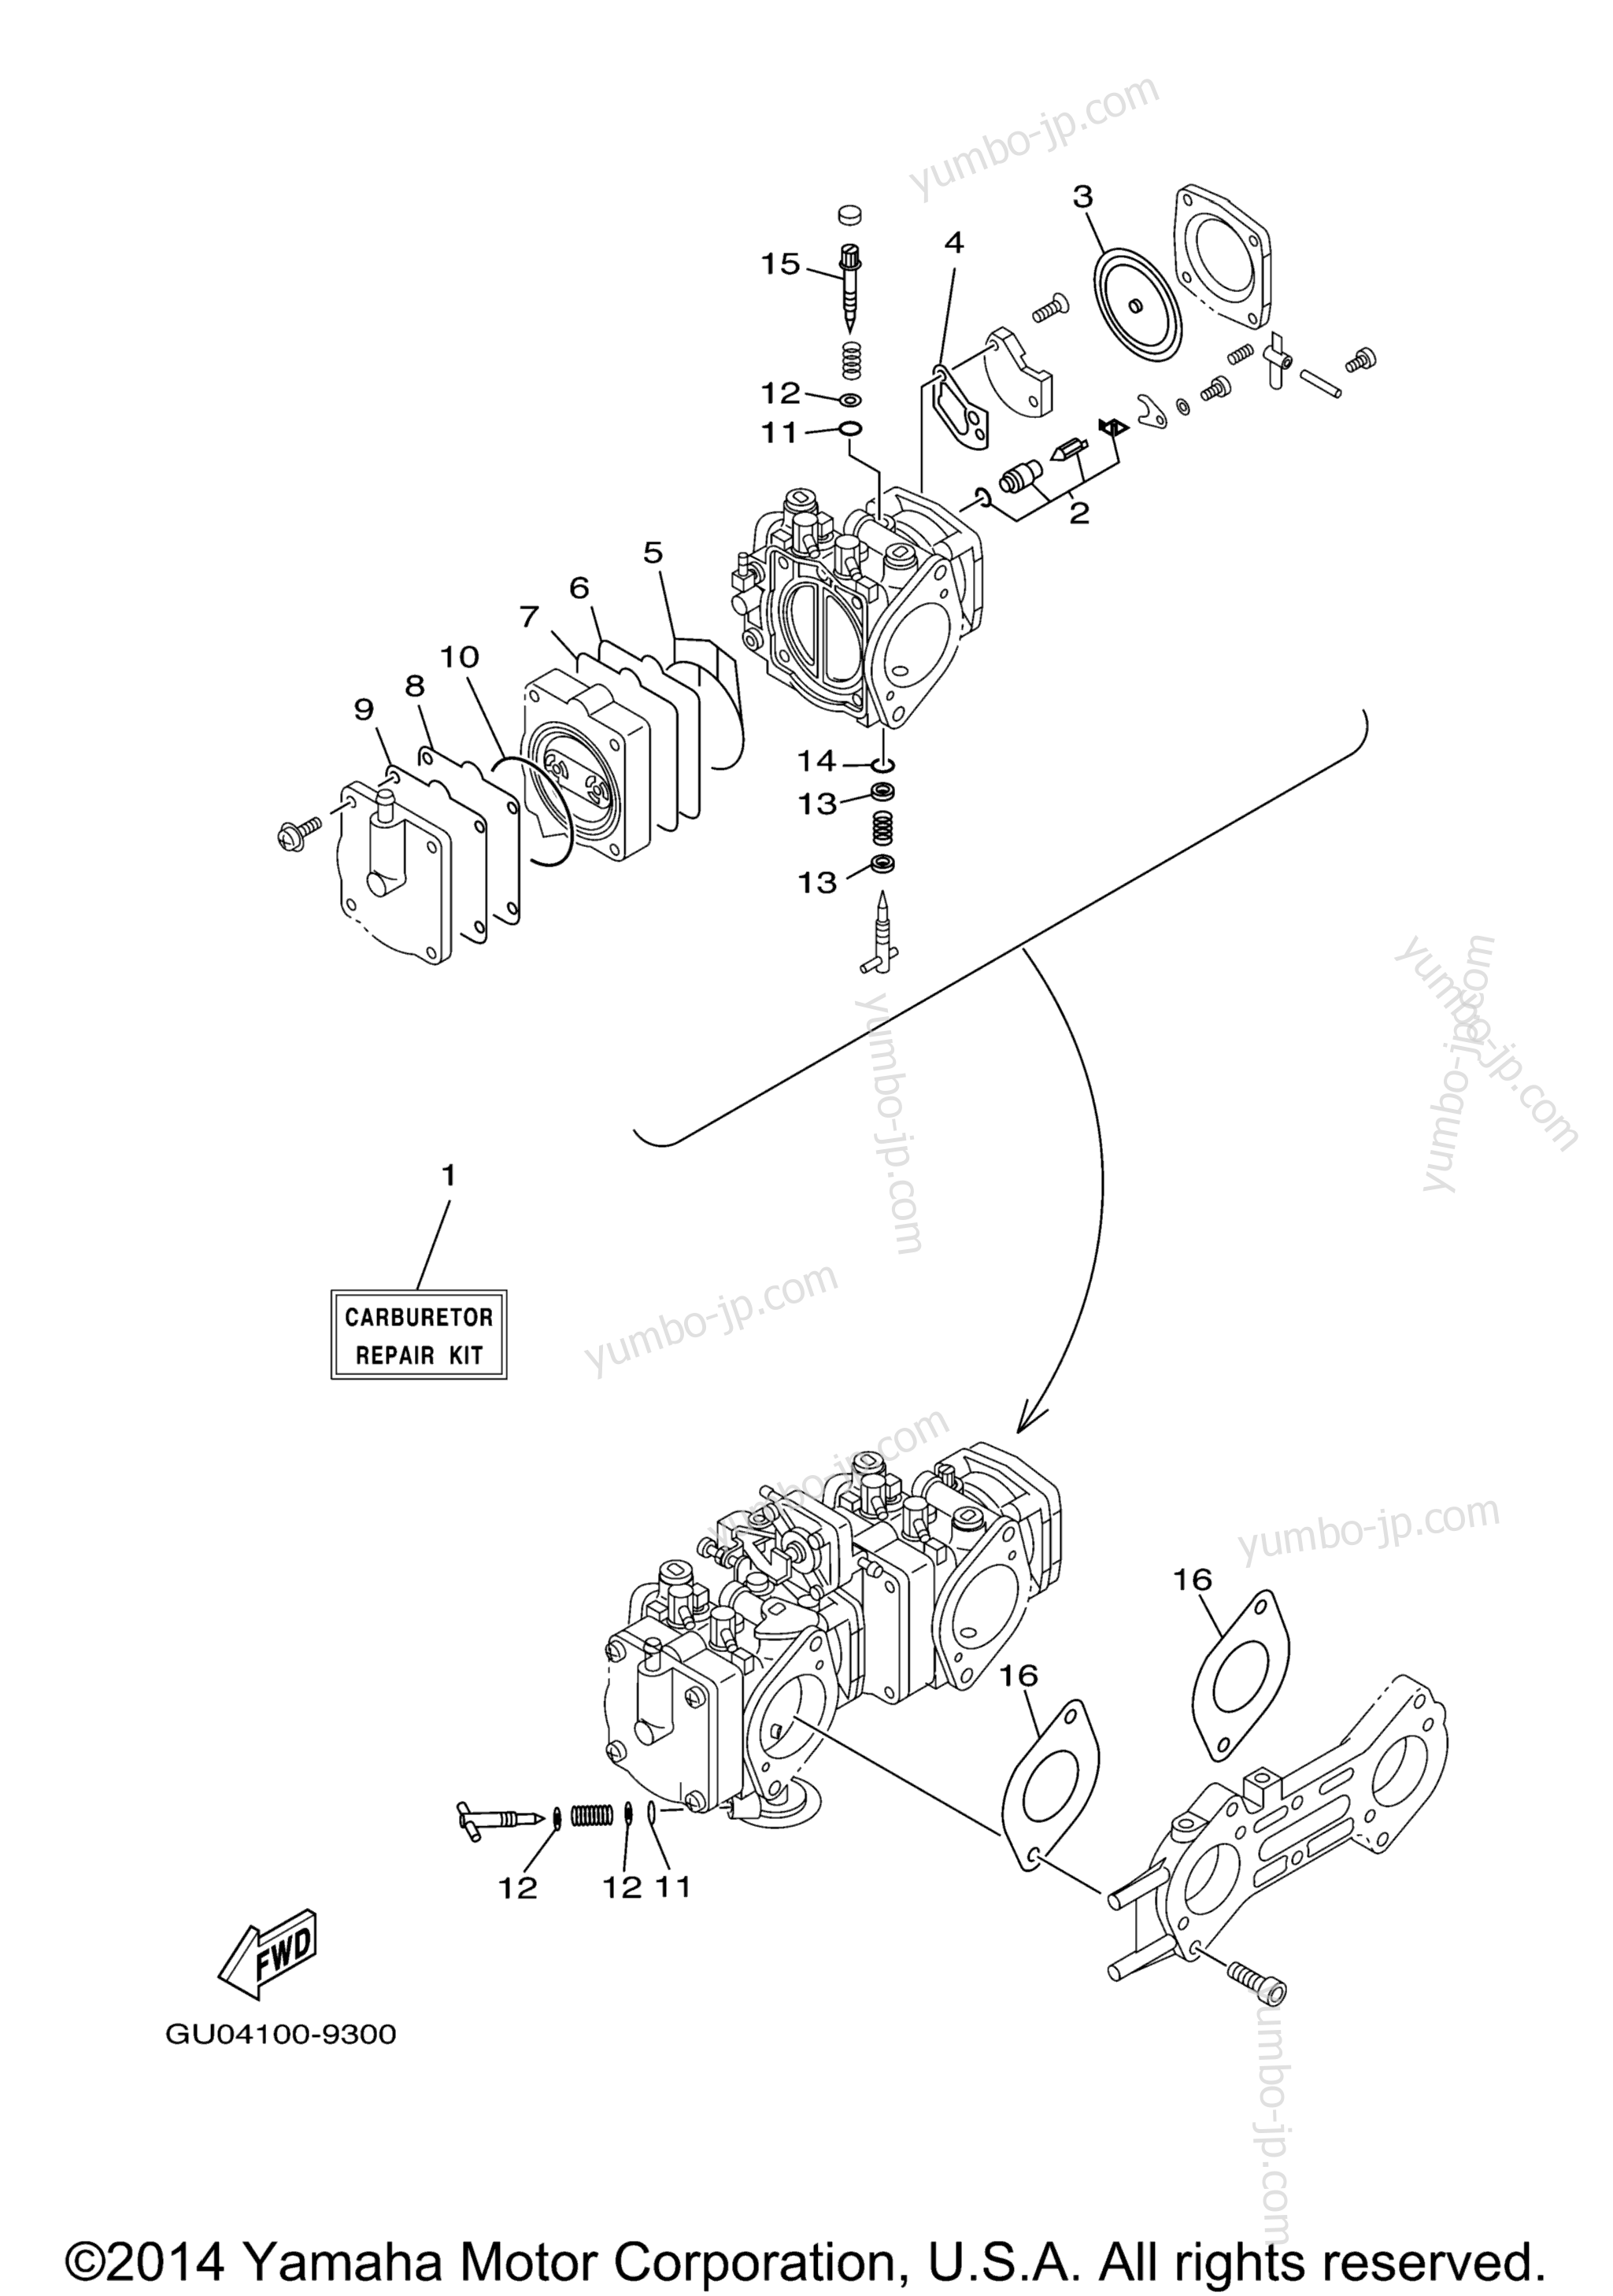 Repair Kit 2 для гидроциклов YAMAHA XLT800 (XA800AB) 2003 г.